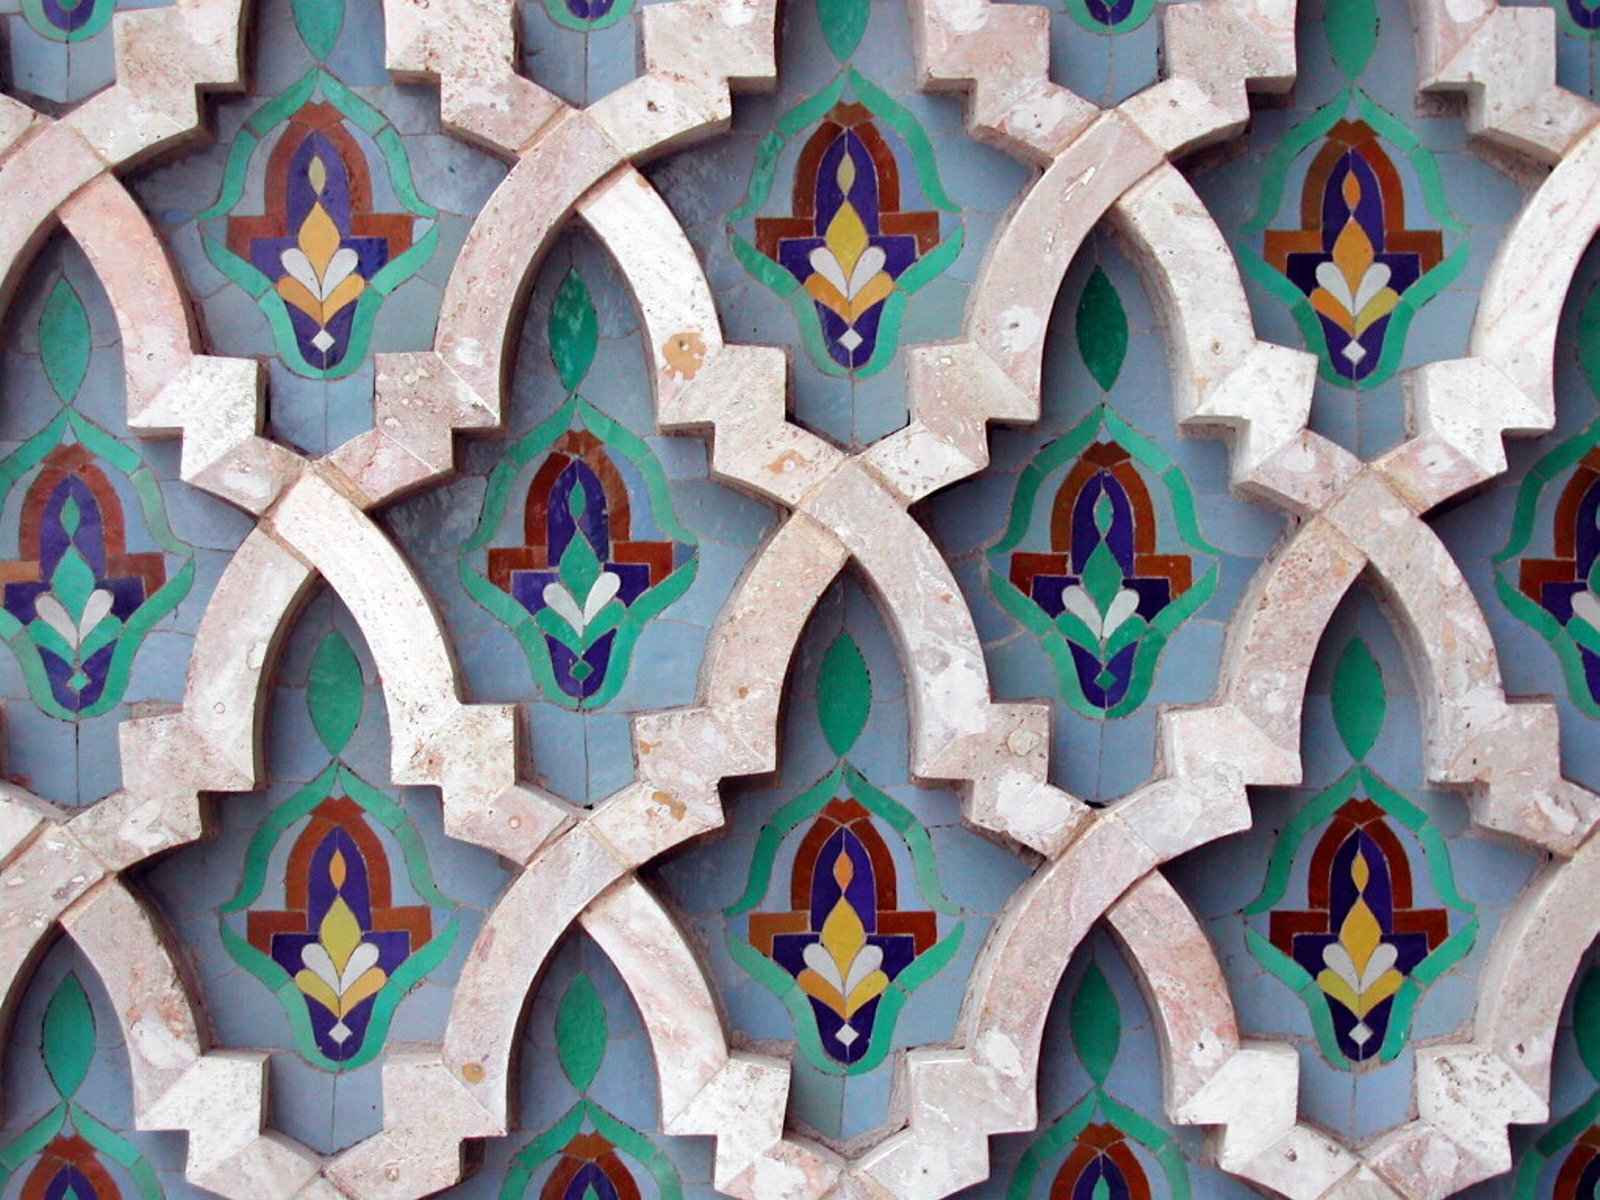 Hassan Ii Mosque Wallpapers